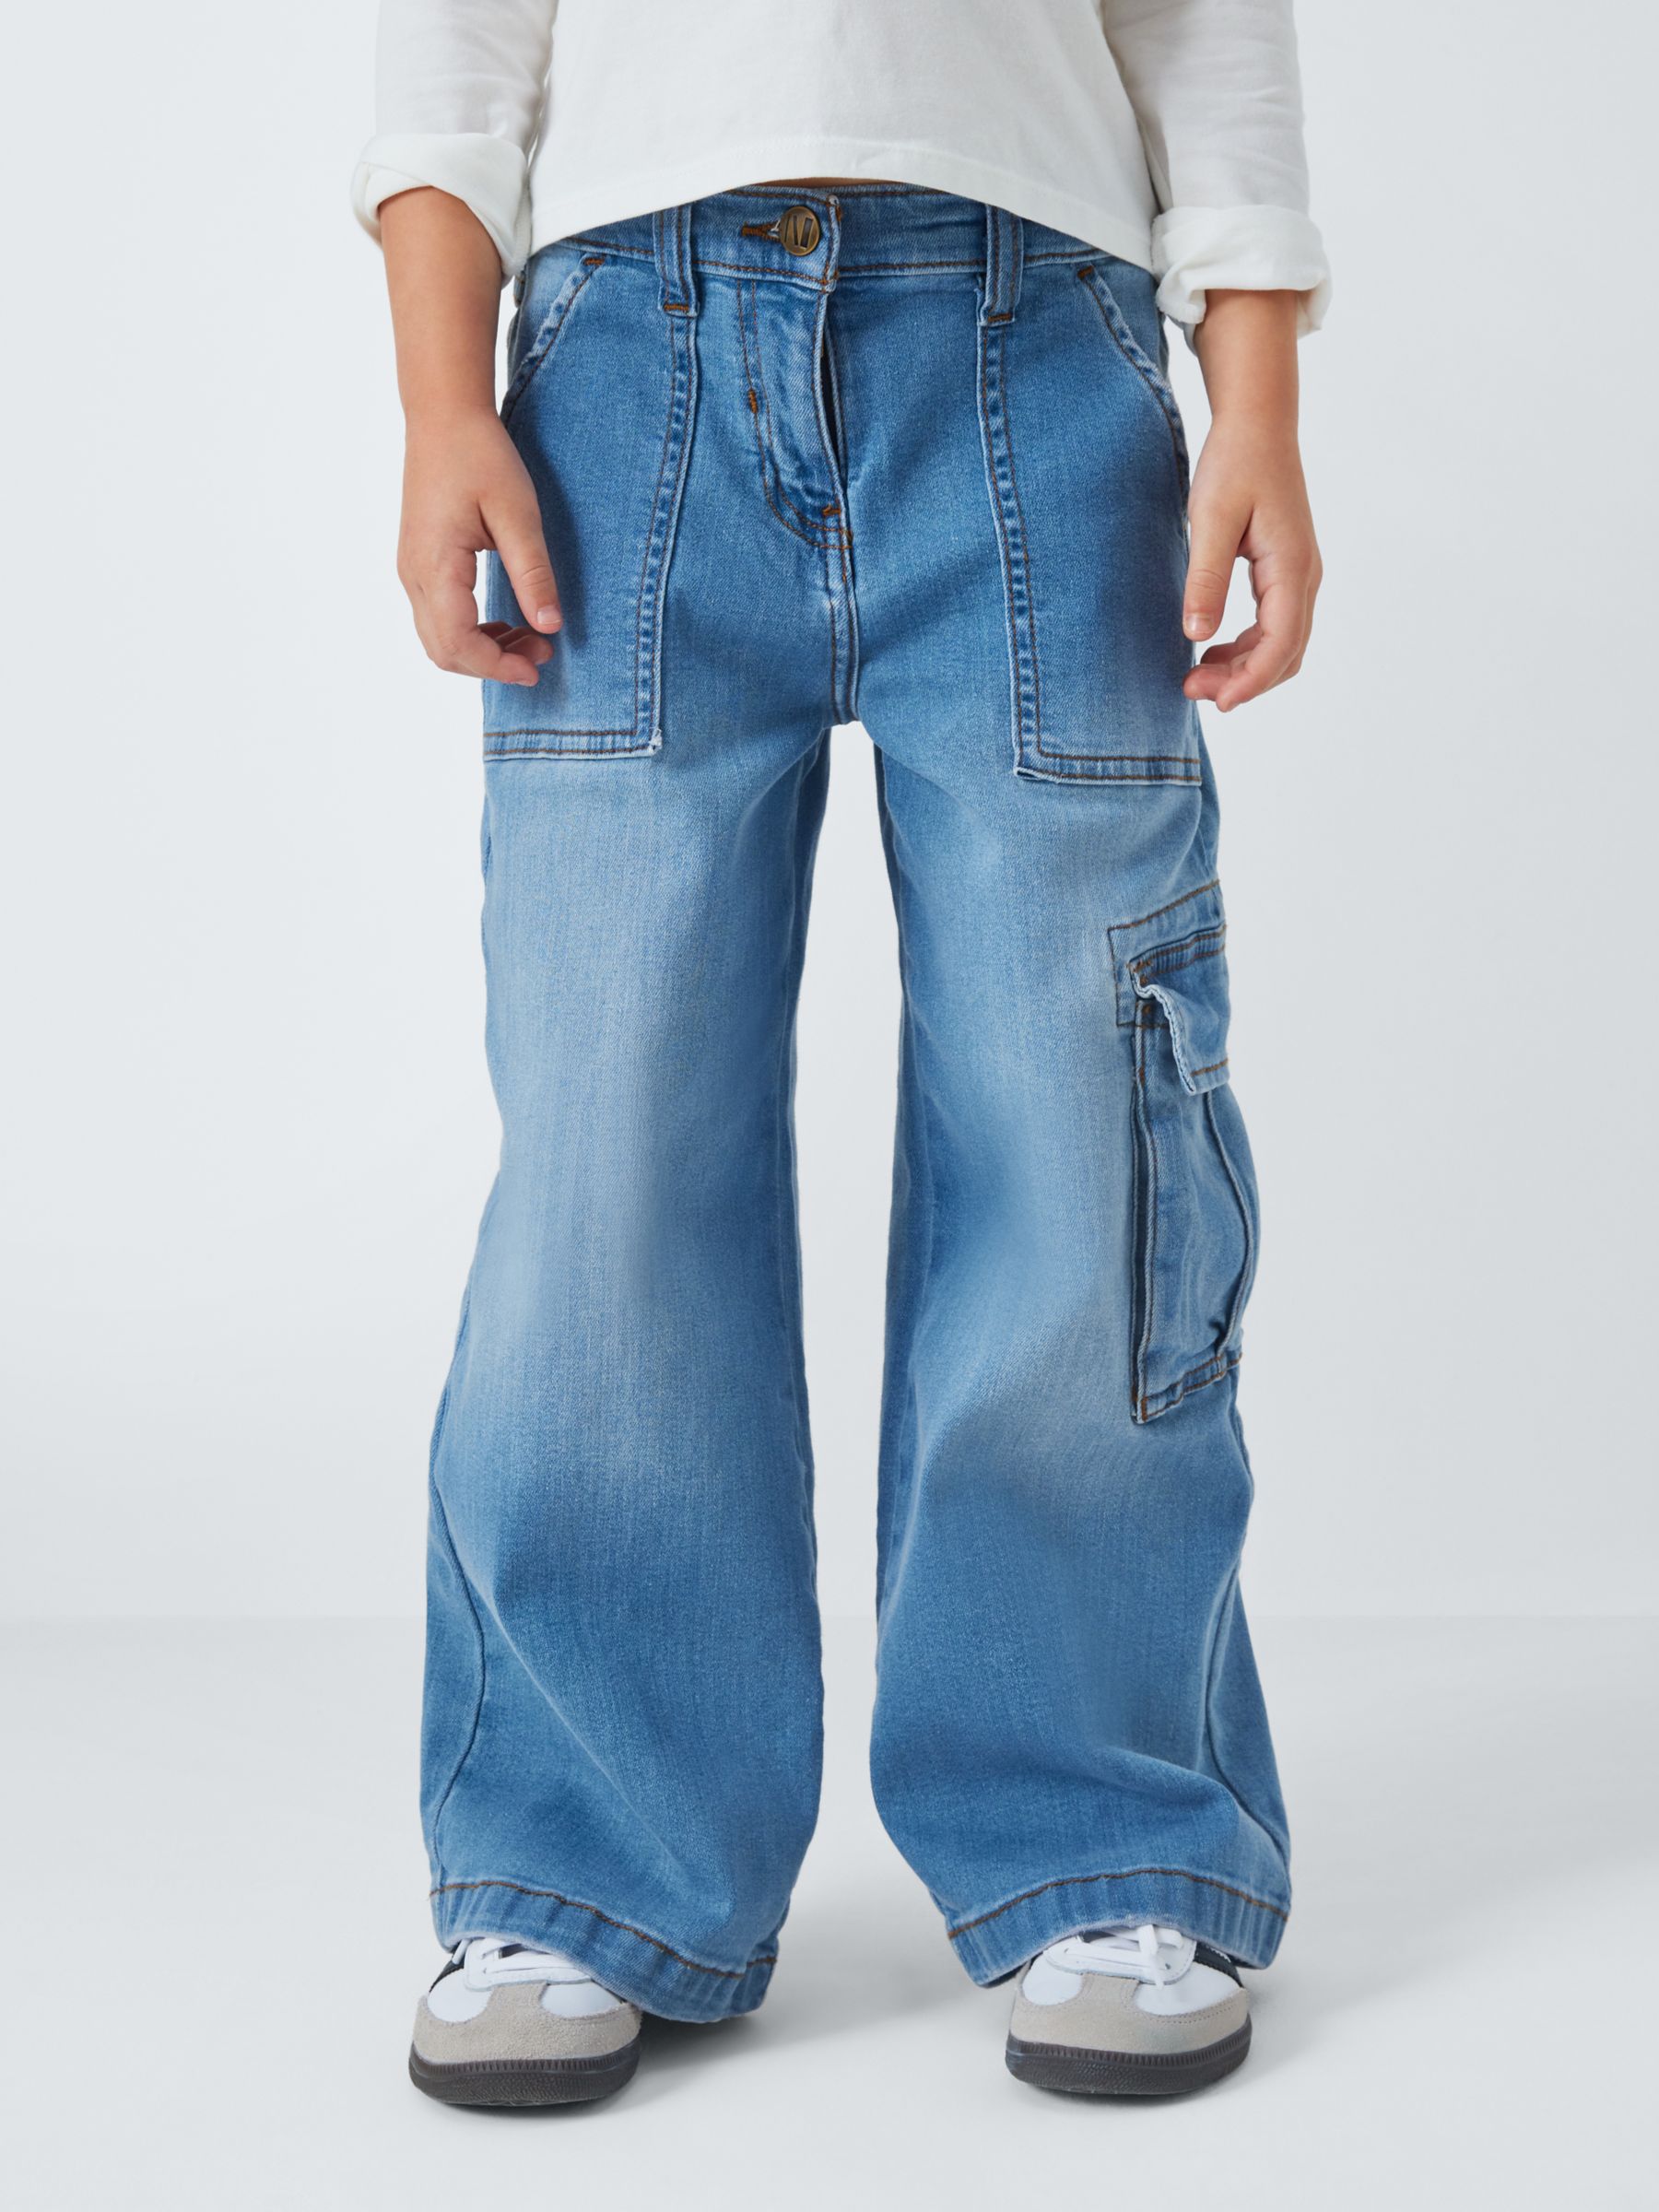 John Lewis Kids' Cargo Wide Leg Jeans, Blue, 11 years